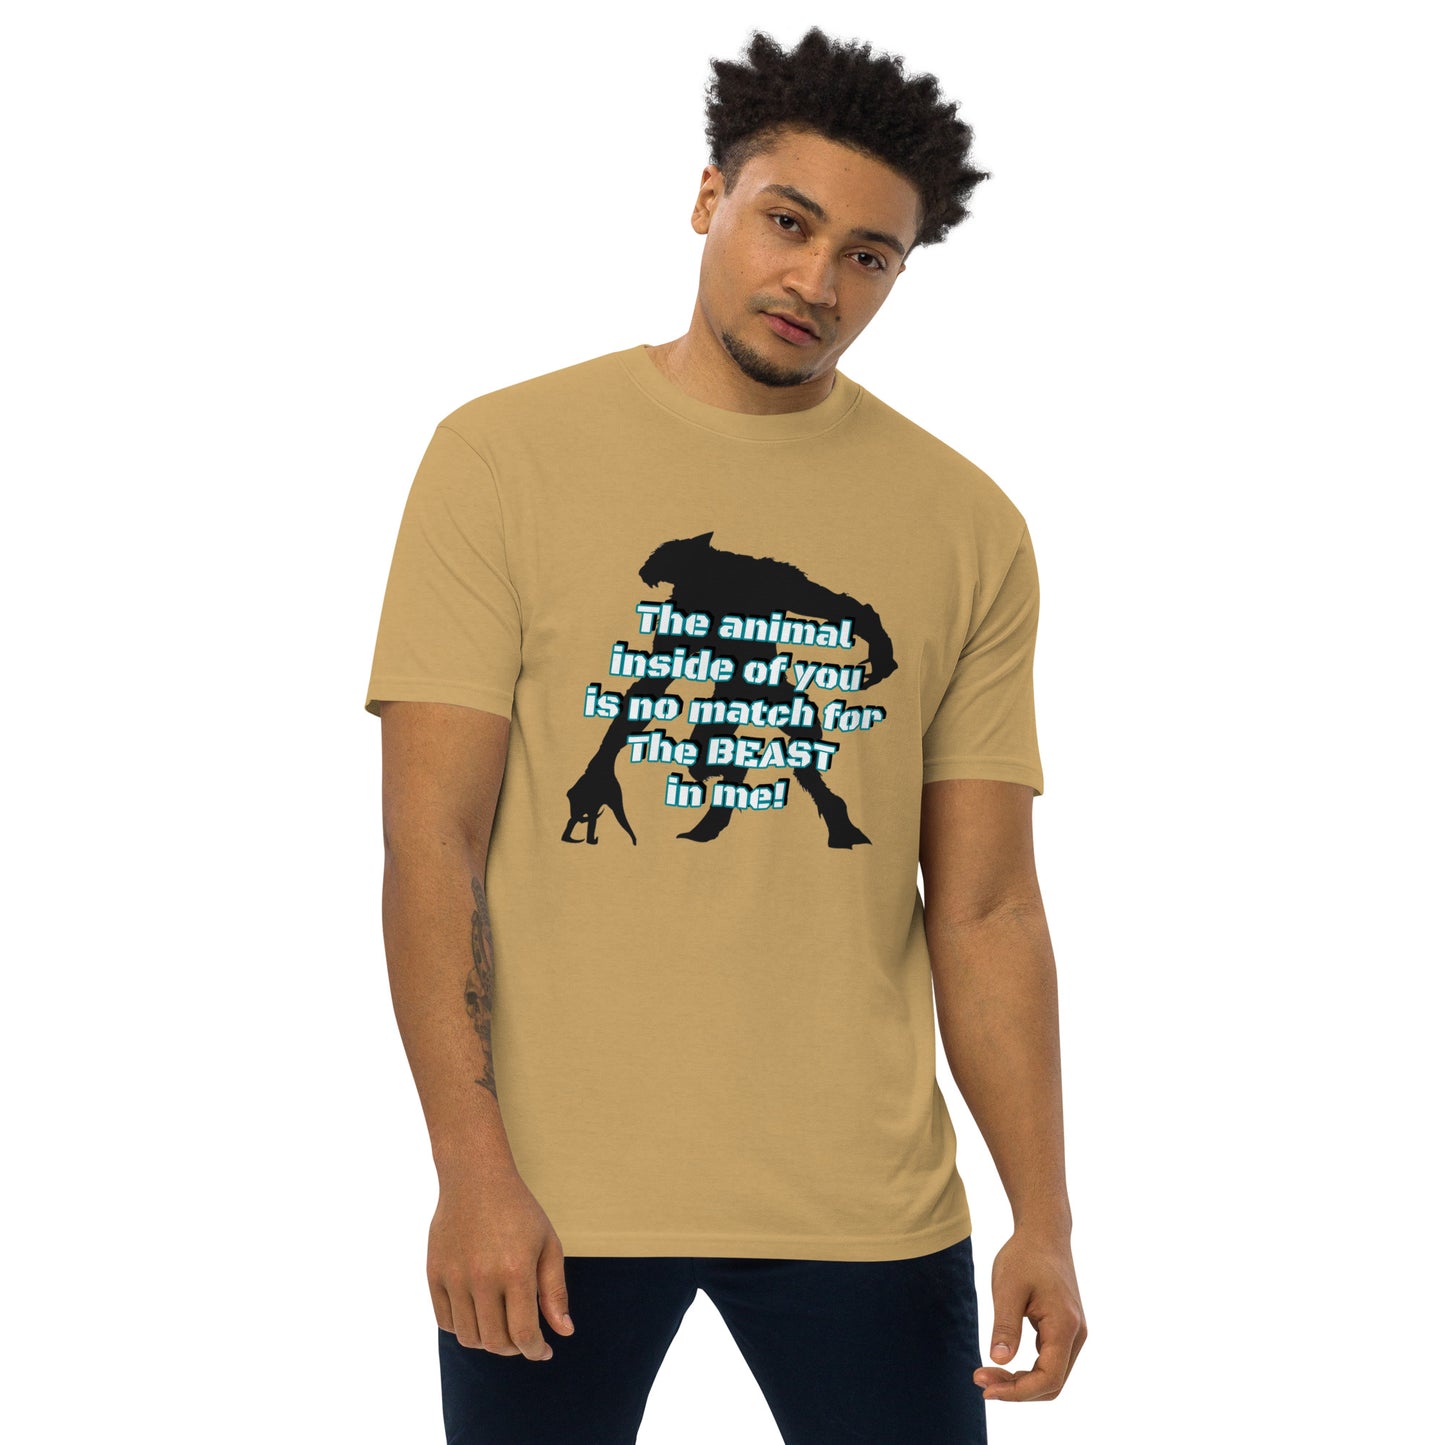 Beast Mode  Men's T-Shirt